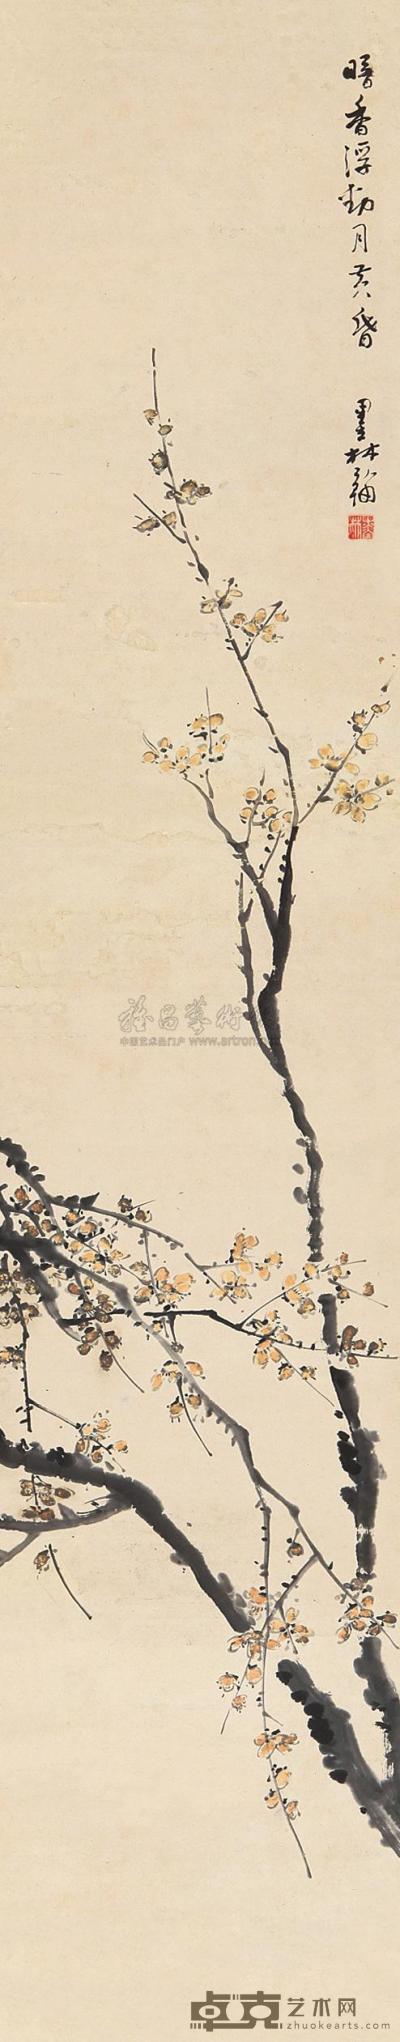 王墨林 暗香浮动月黄昏 立轴 134×26cm